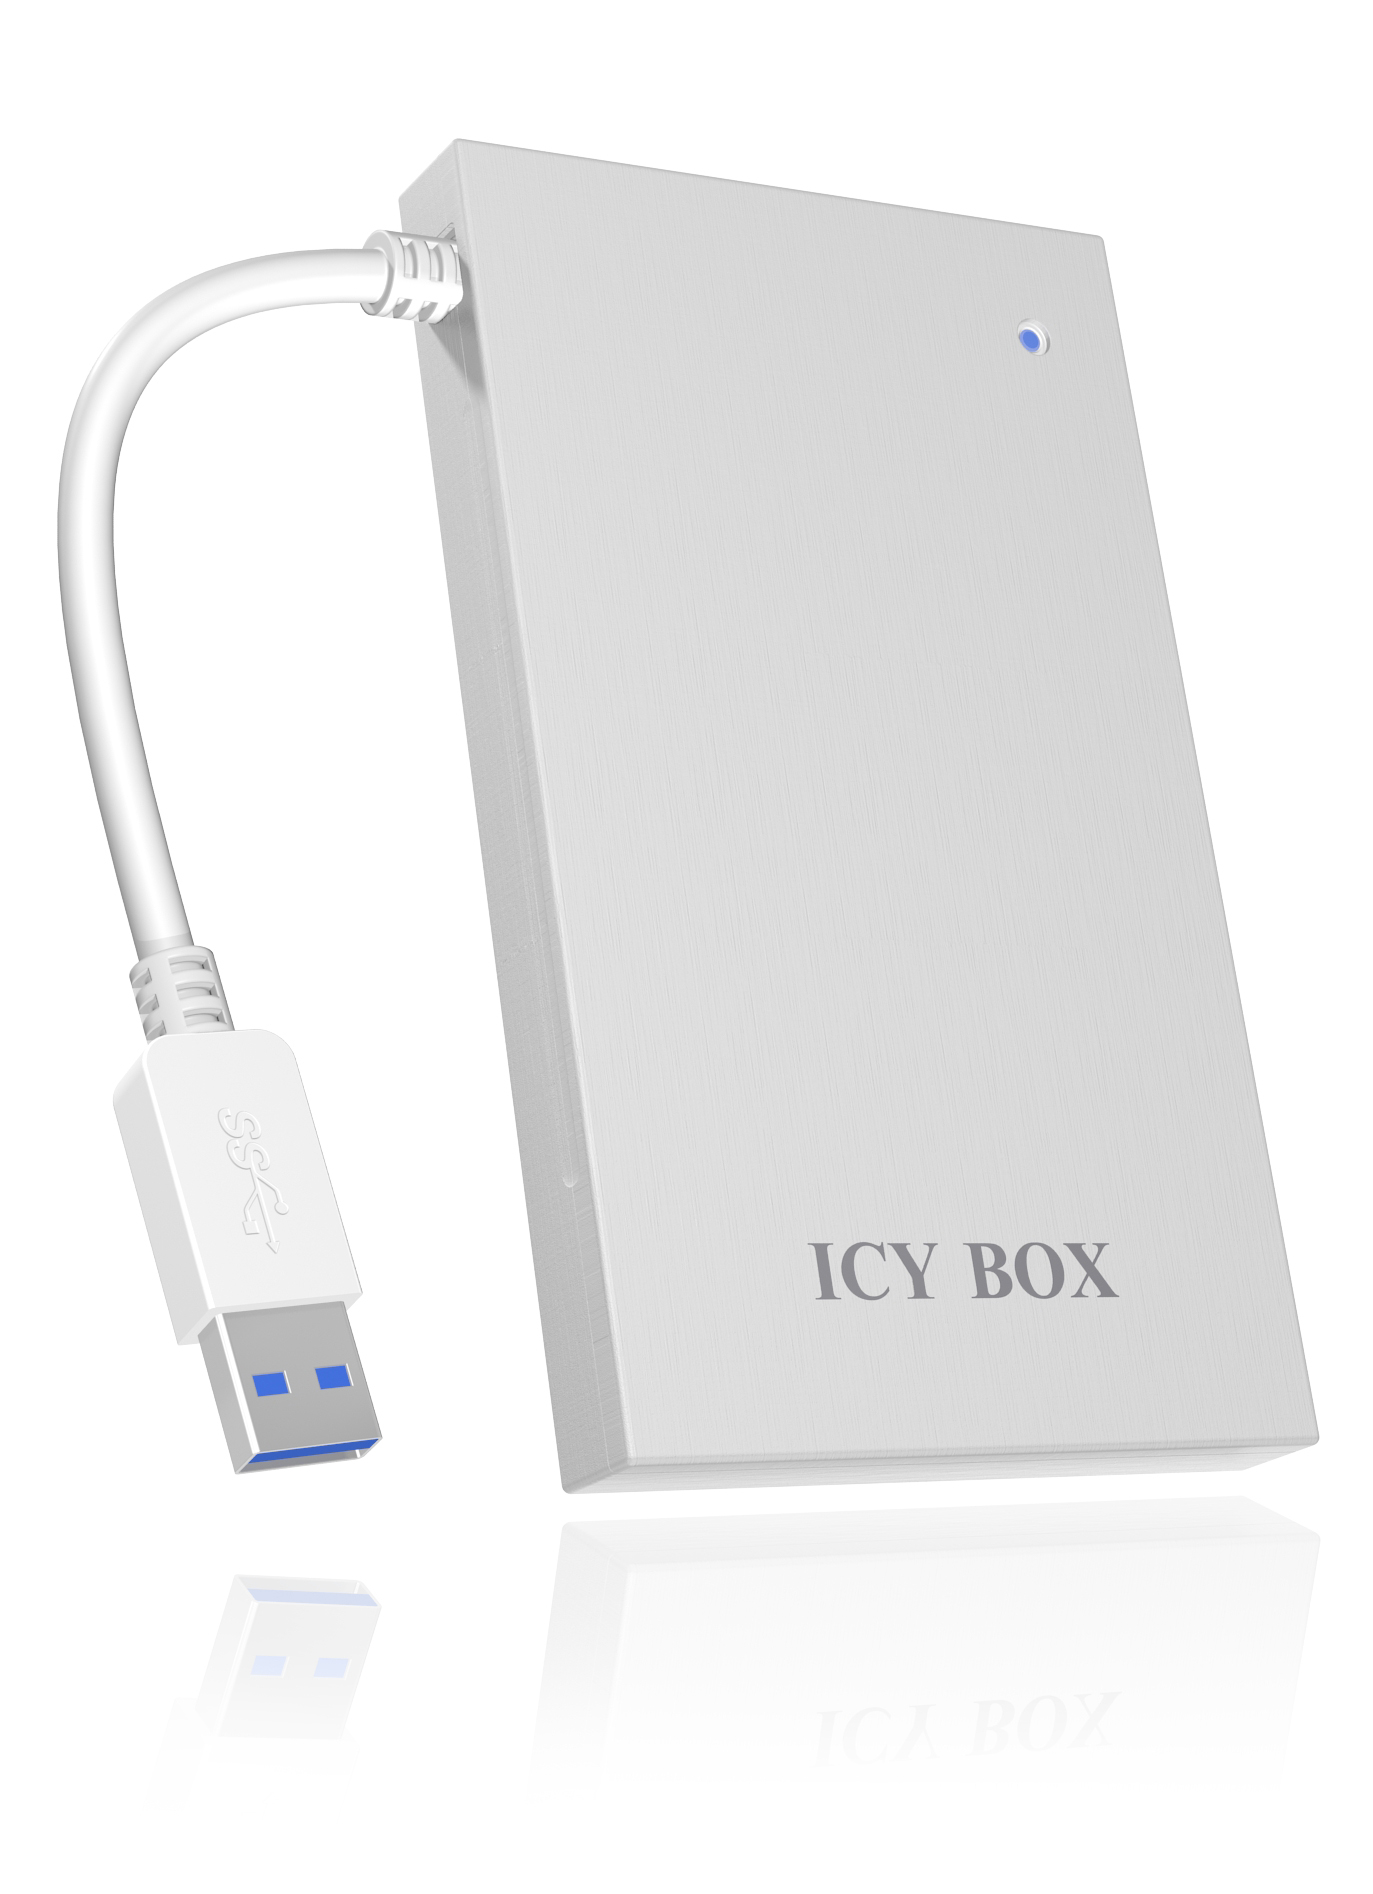 ICY BOX IB-AC Silber 6034-U3 ICY